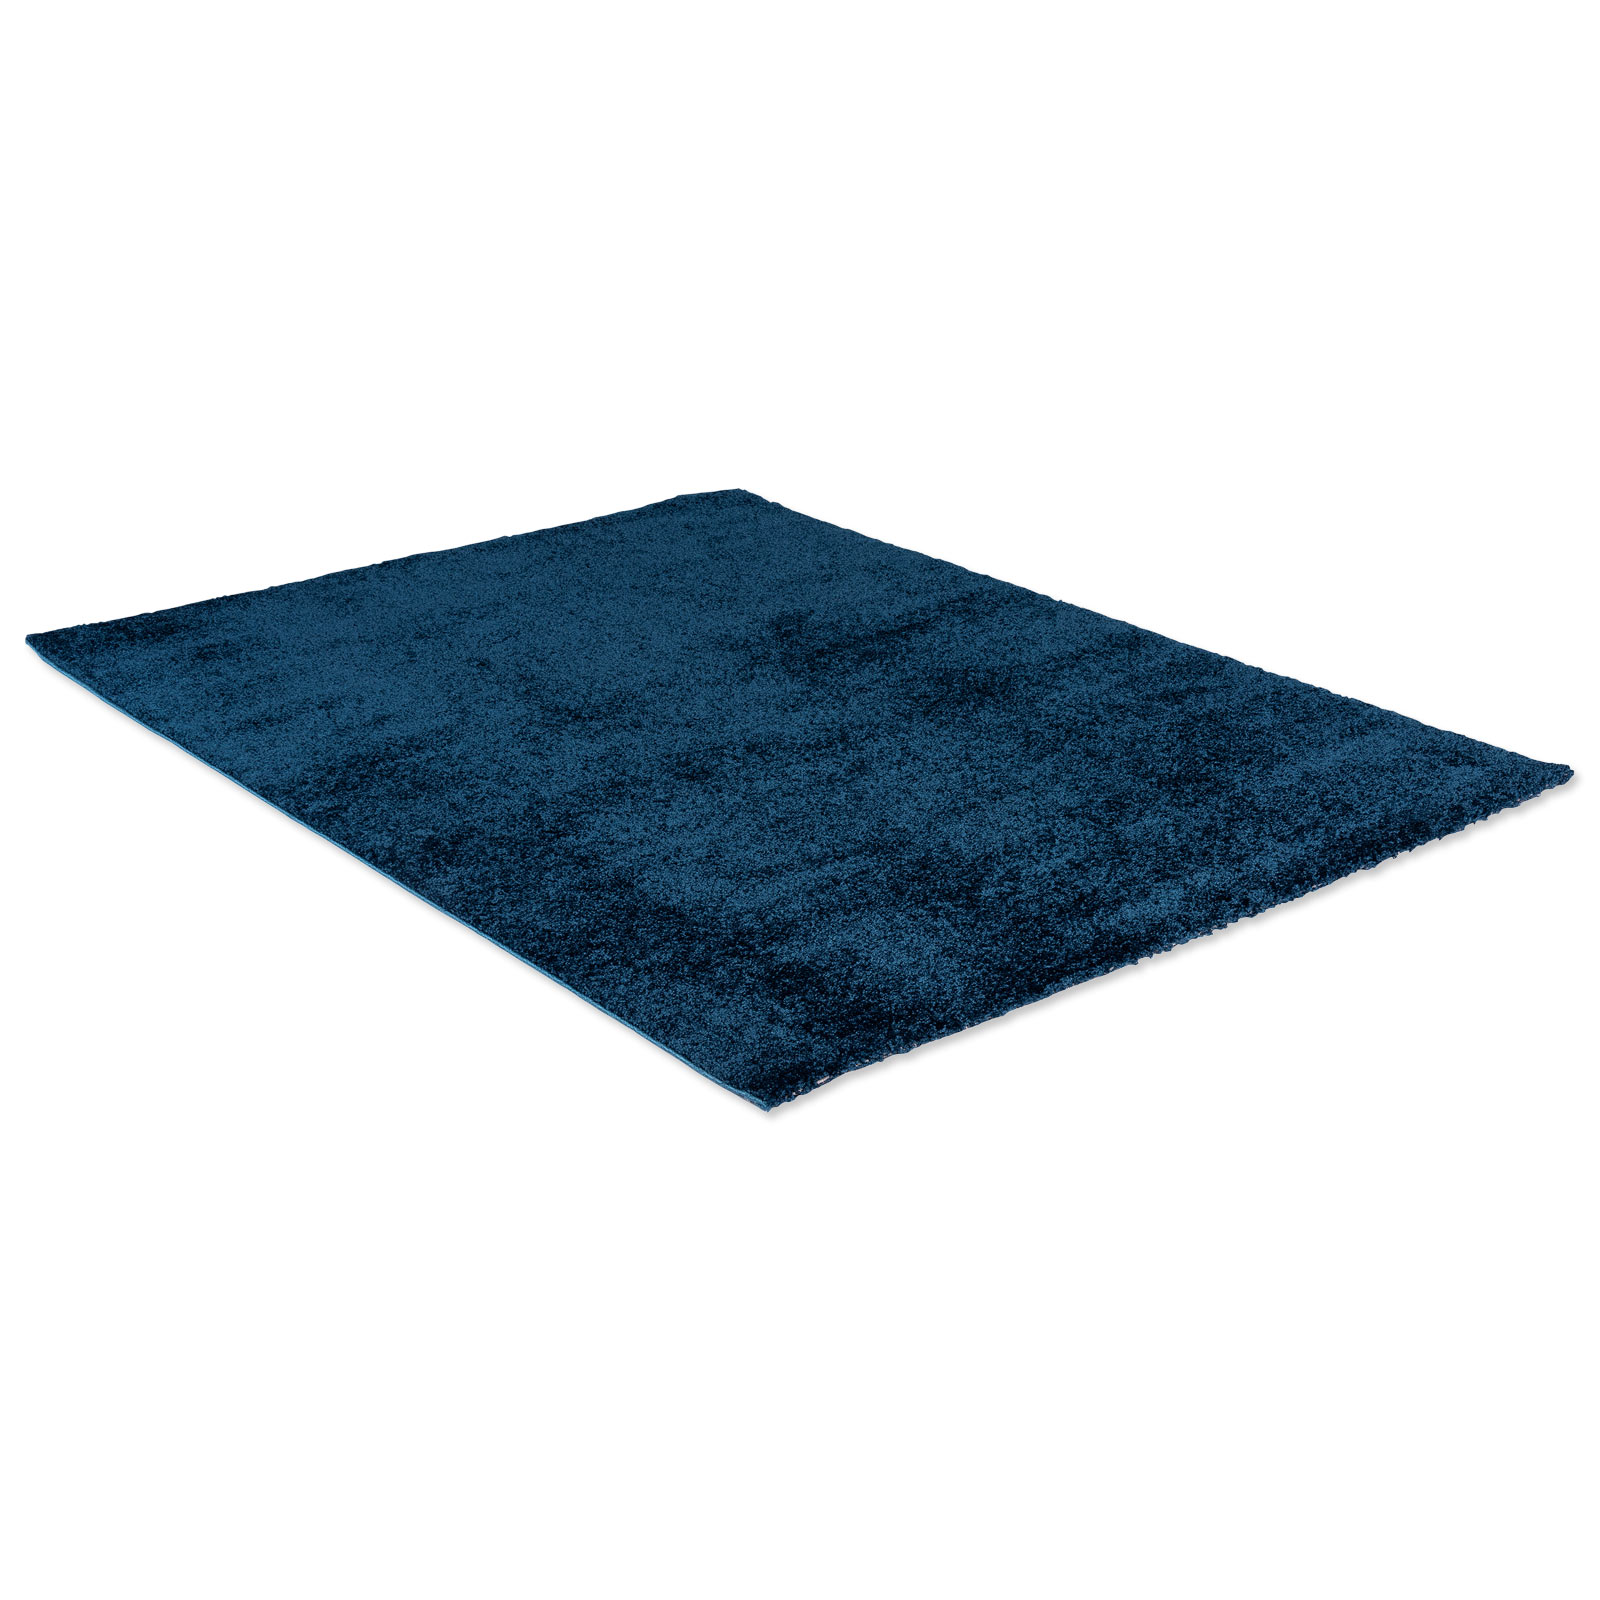 Homara Teppich Blau 160x230 Cm